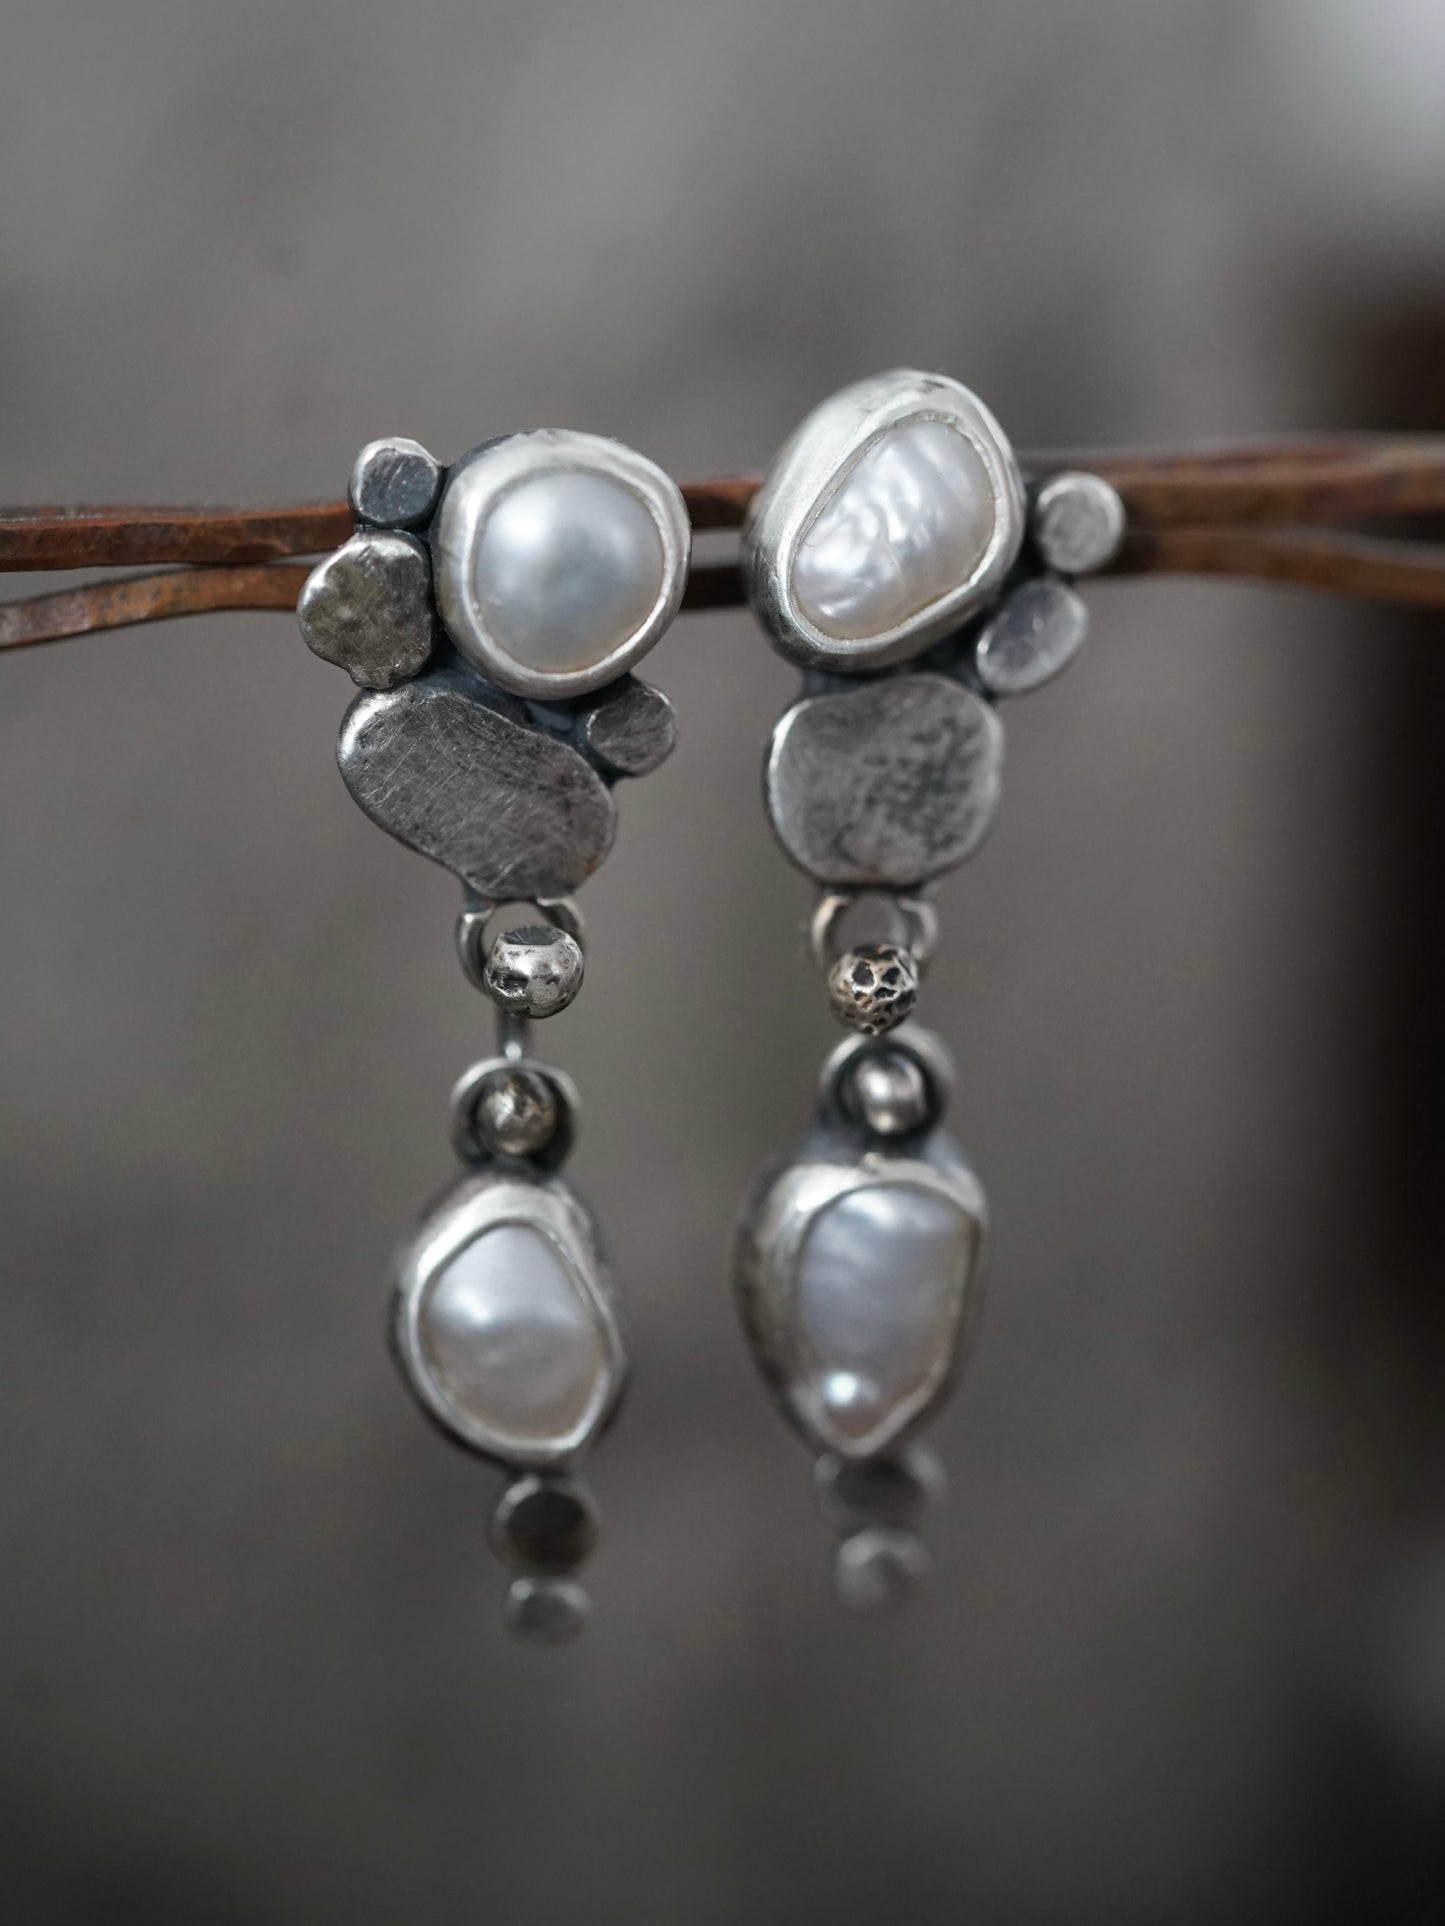 Winter Pearl earrings